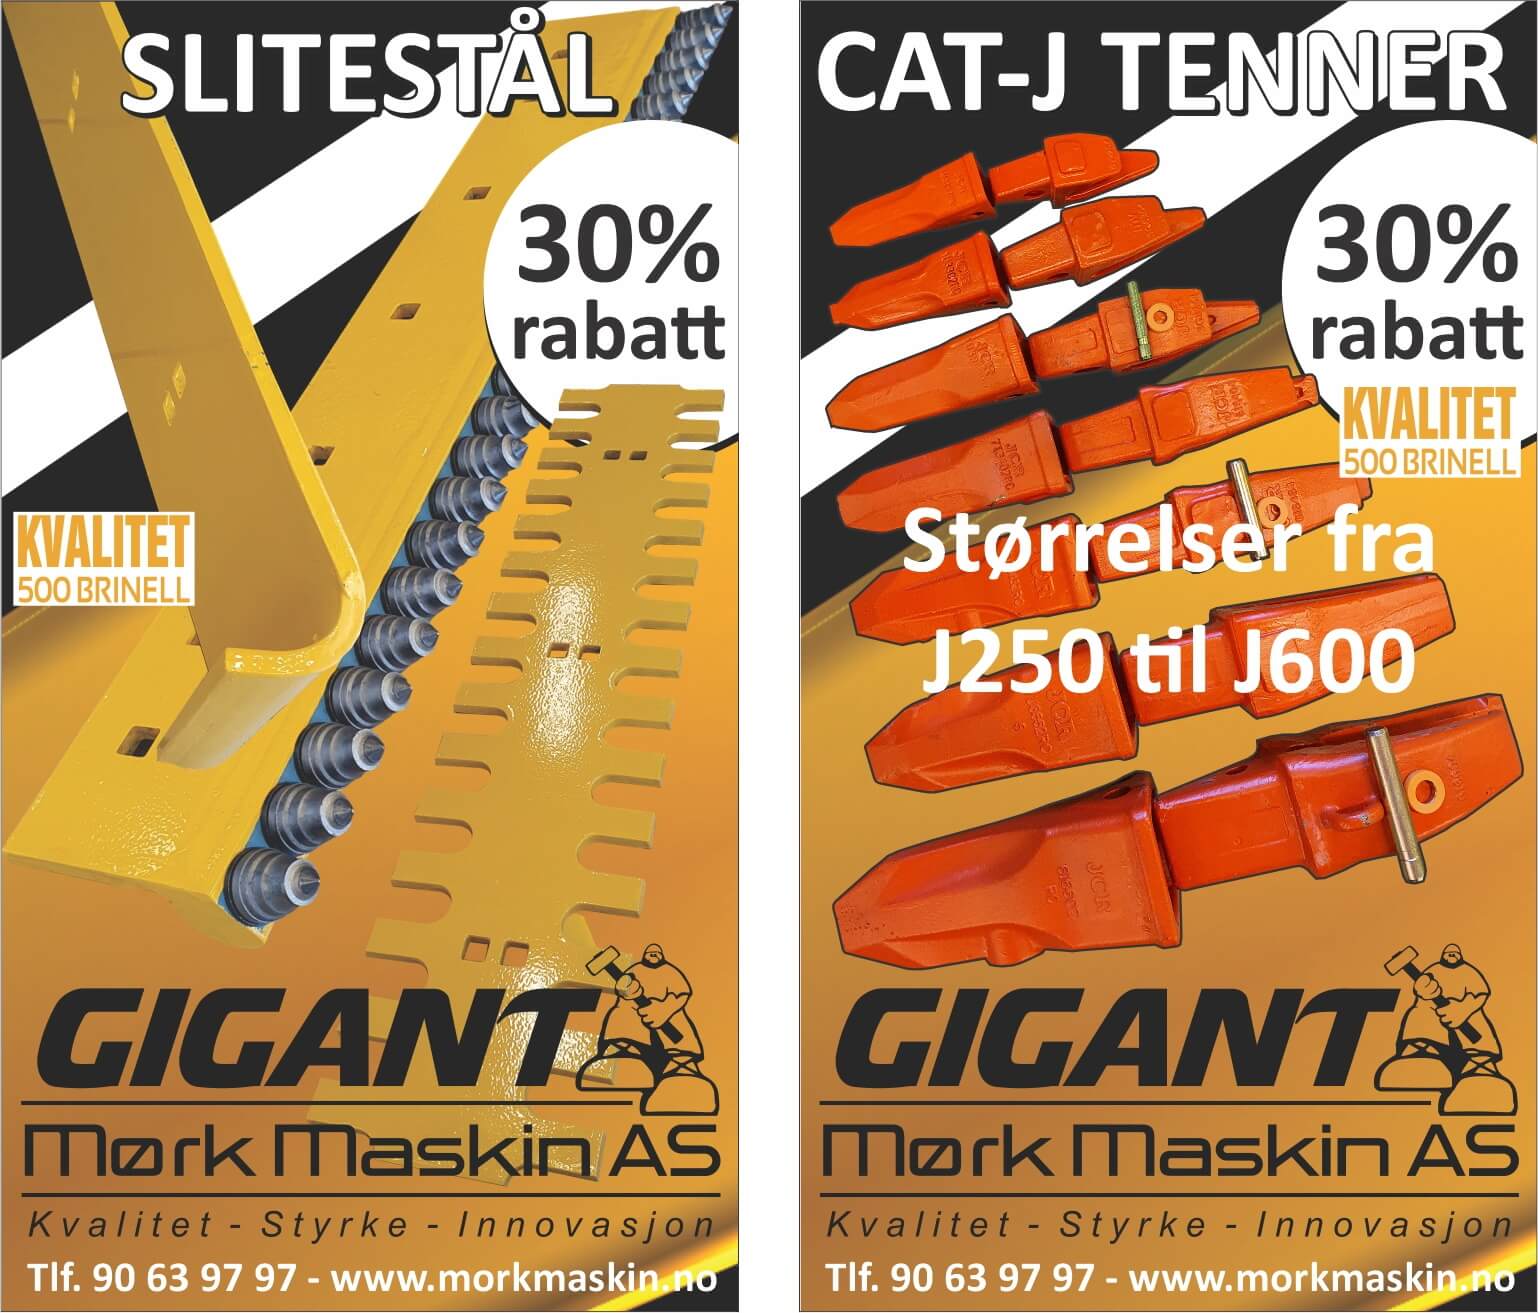 Featured image for “Kampanje på Cat J Tenner og Slitestål (30 % rabatt!)”